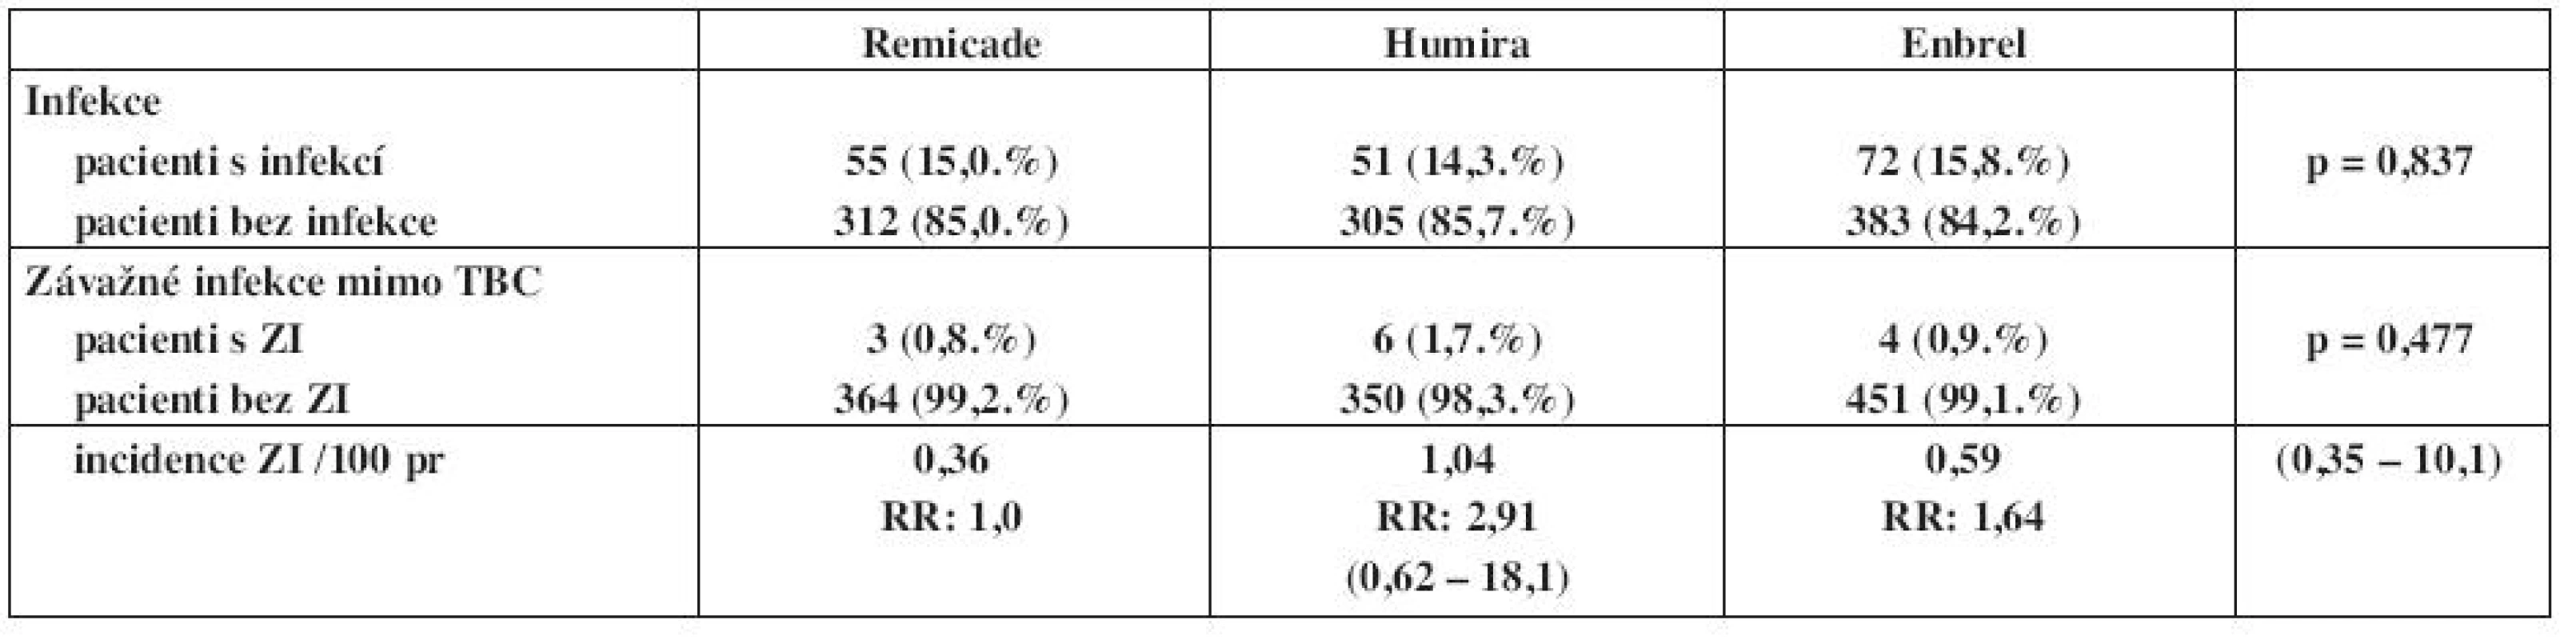 Výskyt a incidence infekcí v registru ATTRA u pacientů s ankylozující spondylitidou - porovnání mezi jednotlivými preparáty.